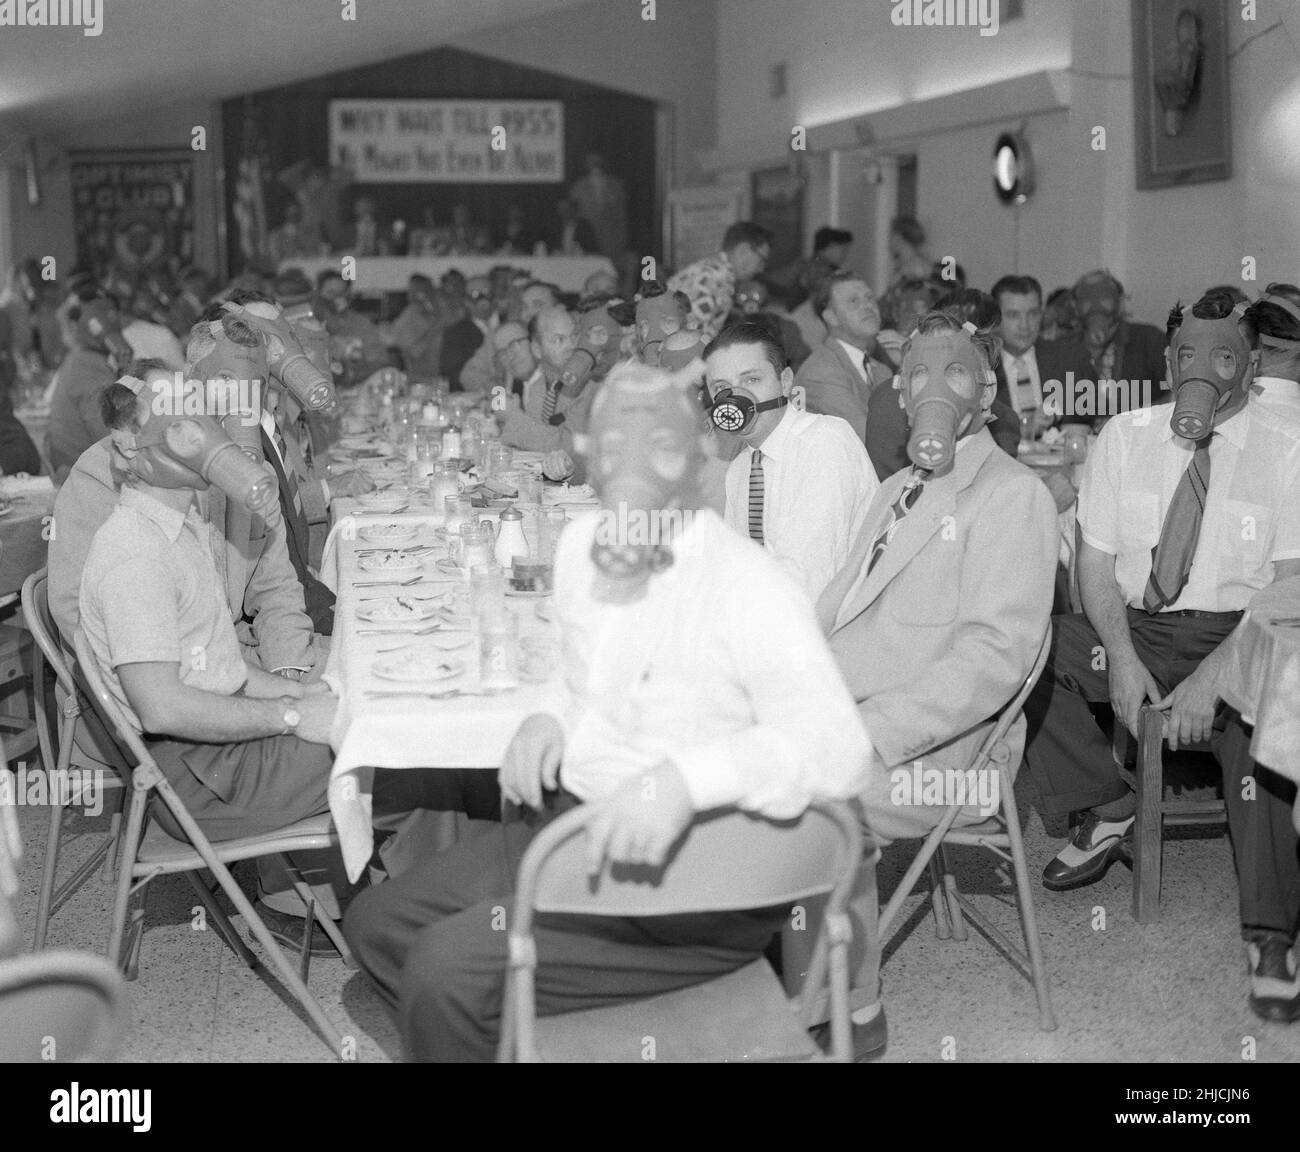 Highland Park Optimist Club mit Smog-Gasmasken beim Bankett, um 1954. Nordosten Von Los Angeles, Südkalifornien. Stockfoto